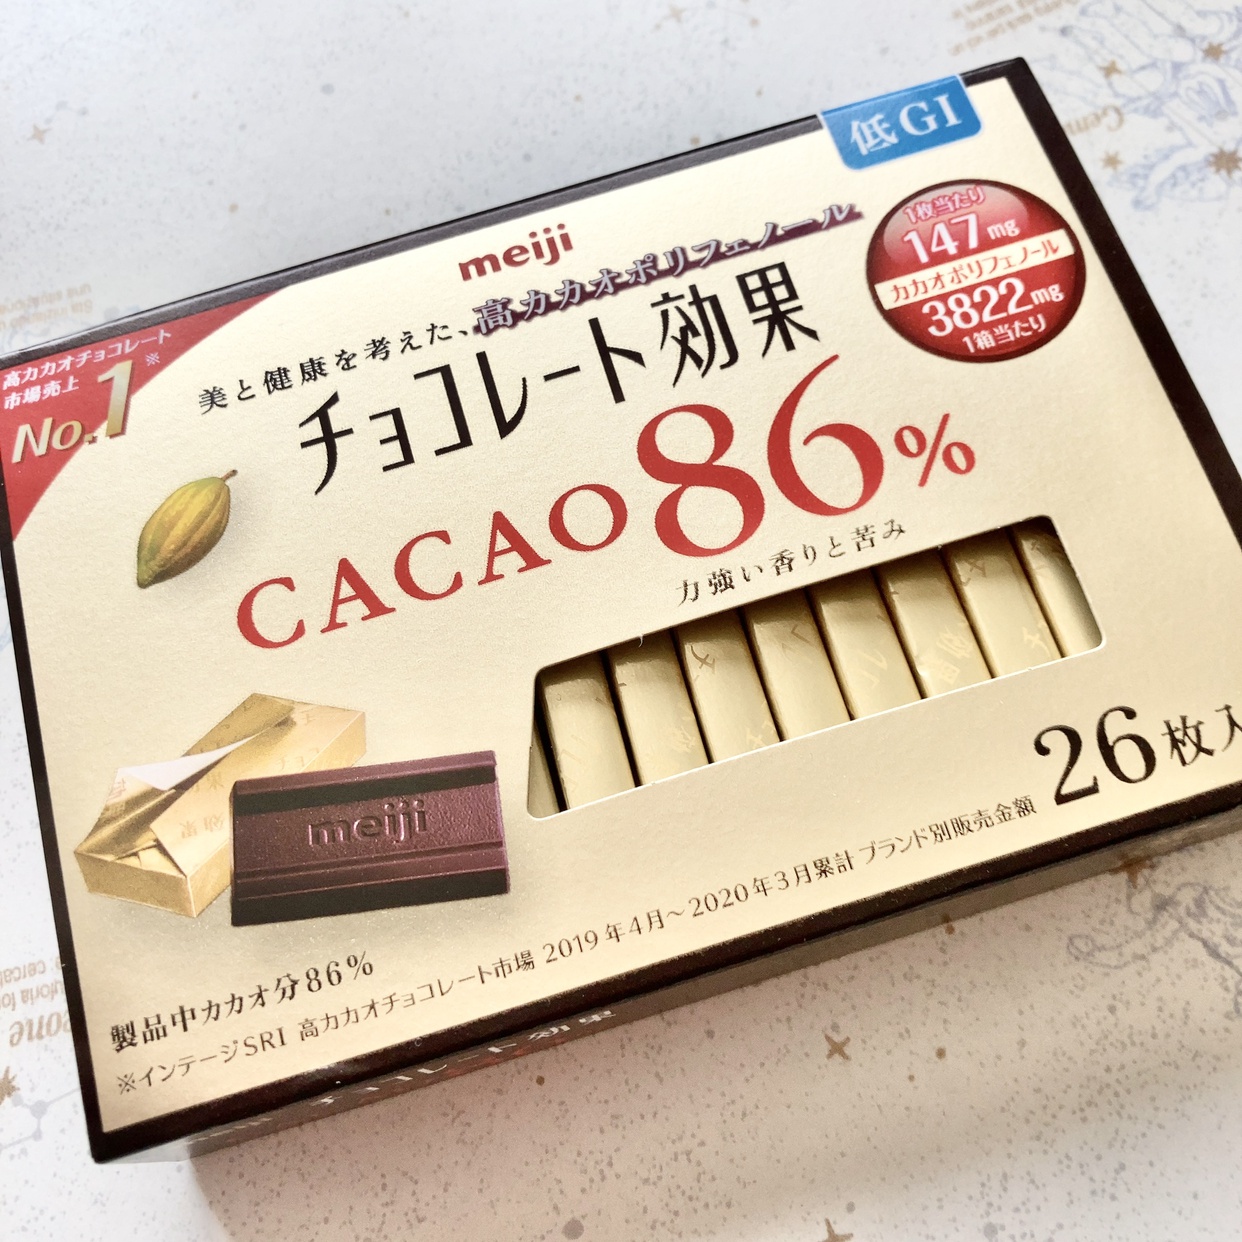 明治(meiji) チョコレート効果カカオ86%の良い点・メリットに関するえりみらくるさんの口コミ画像2